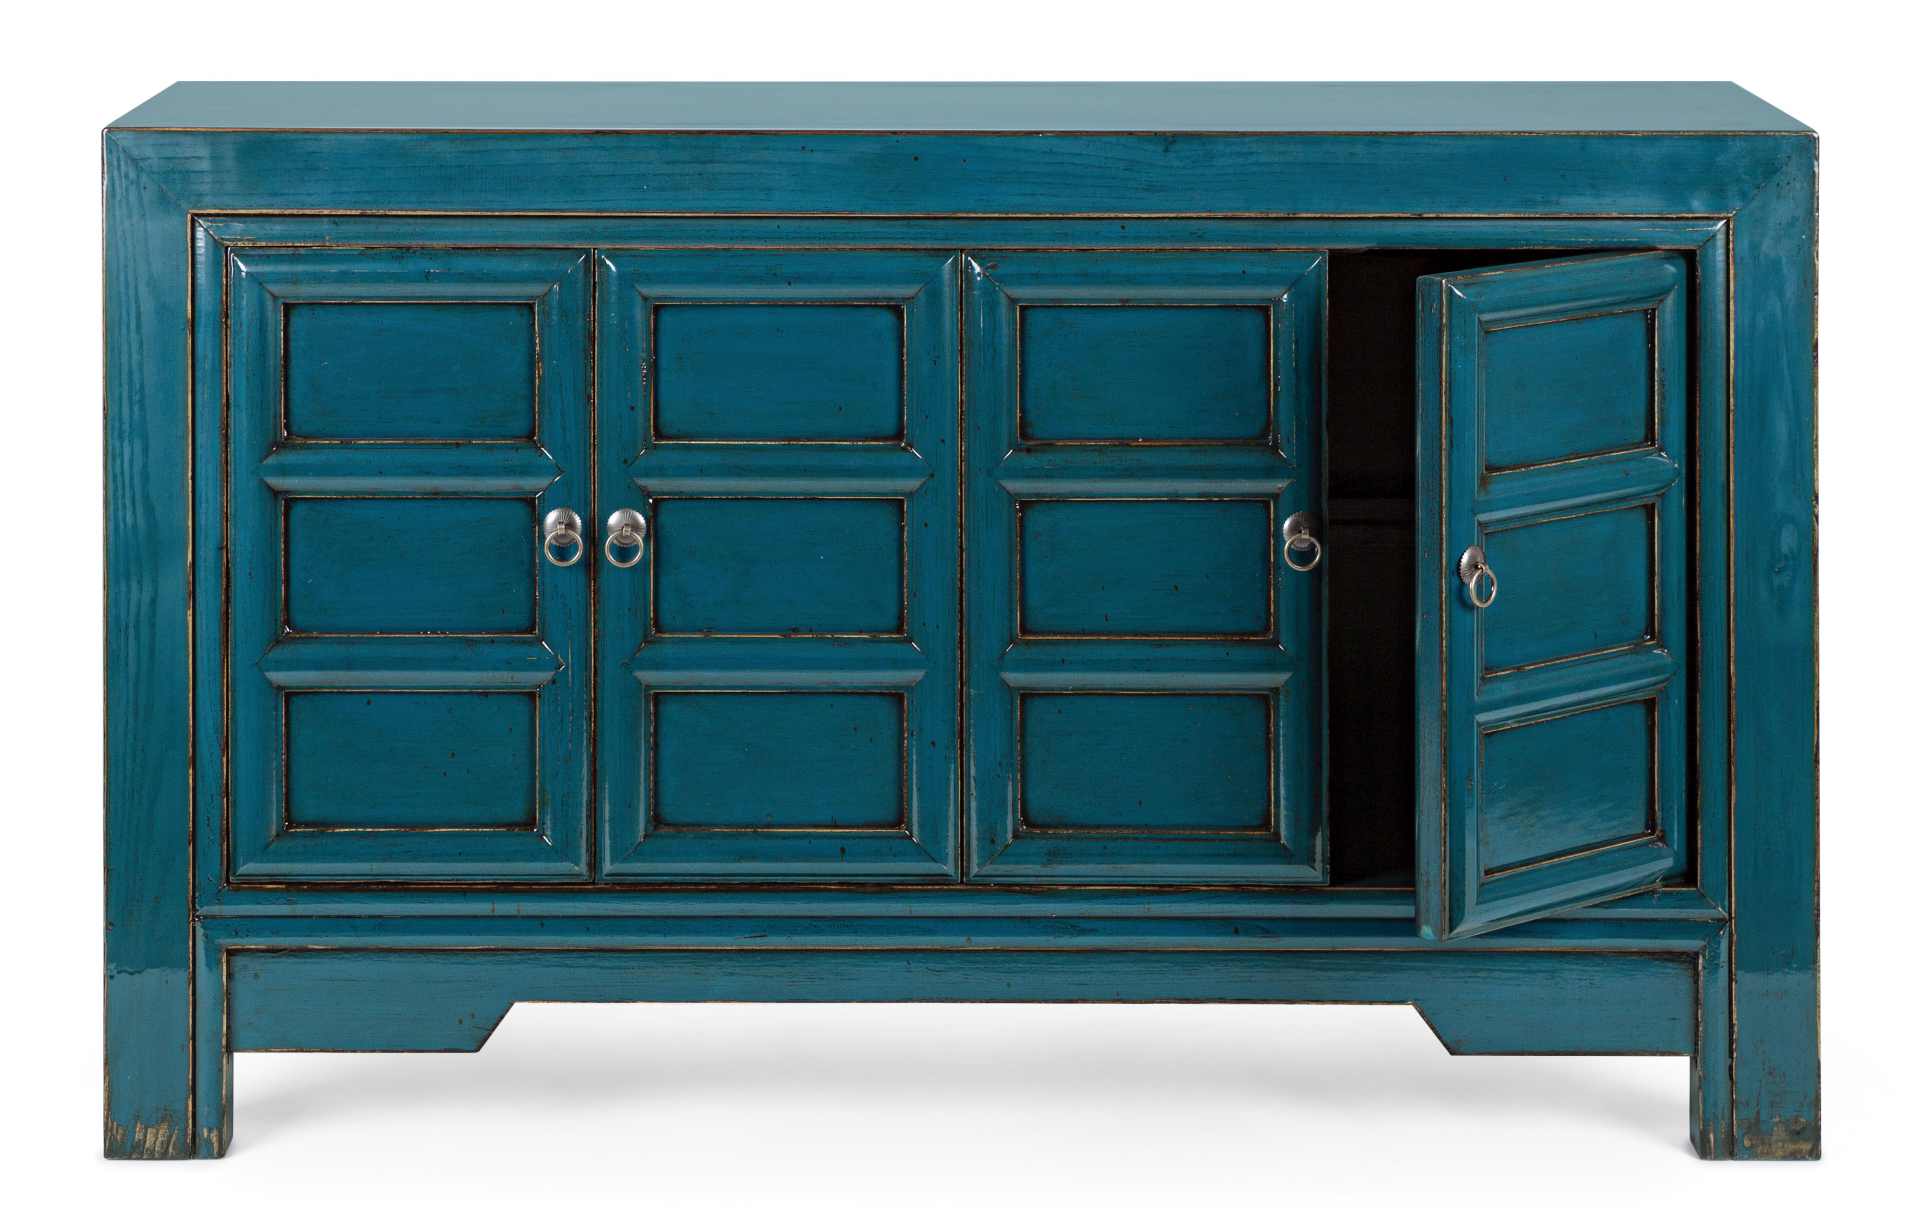 Das Sideboard Jinan überzeugt mit seinem klassischen Design. Gefertigt wurde es aus Ulmen-Holz, welches einen blauen Farbton besitzt. Das Gestell ist auch aus Ulmen-Holz. Das Sideboard verfügt über vier Türen. Die Breite beträgt 133 cm.